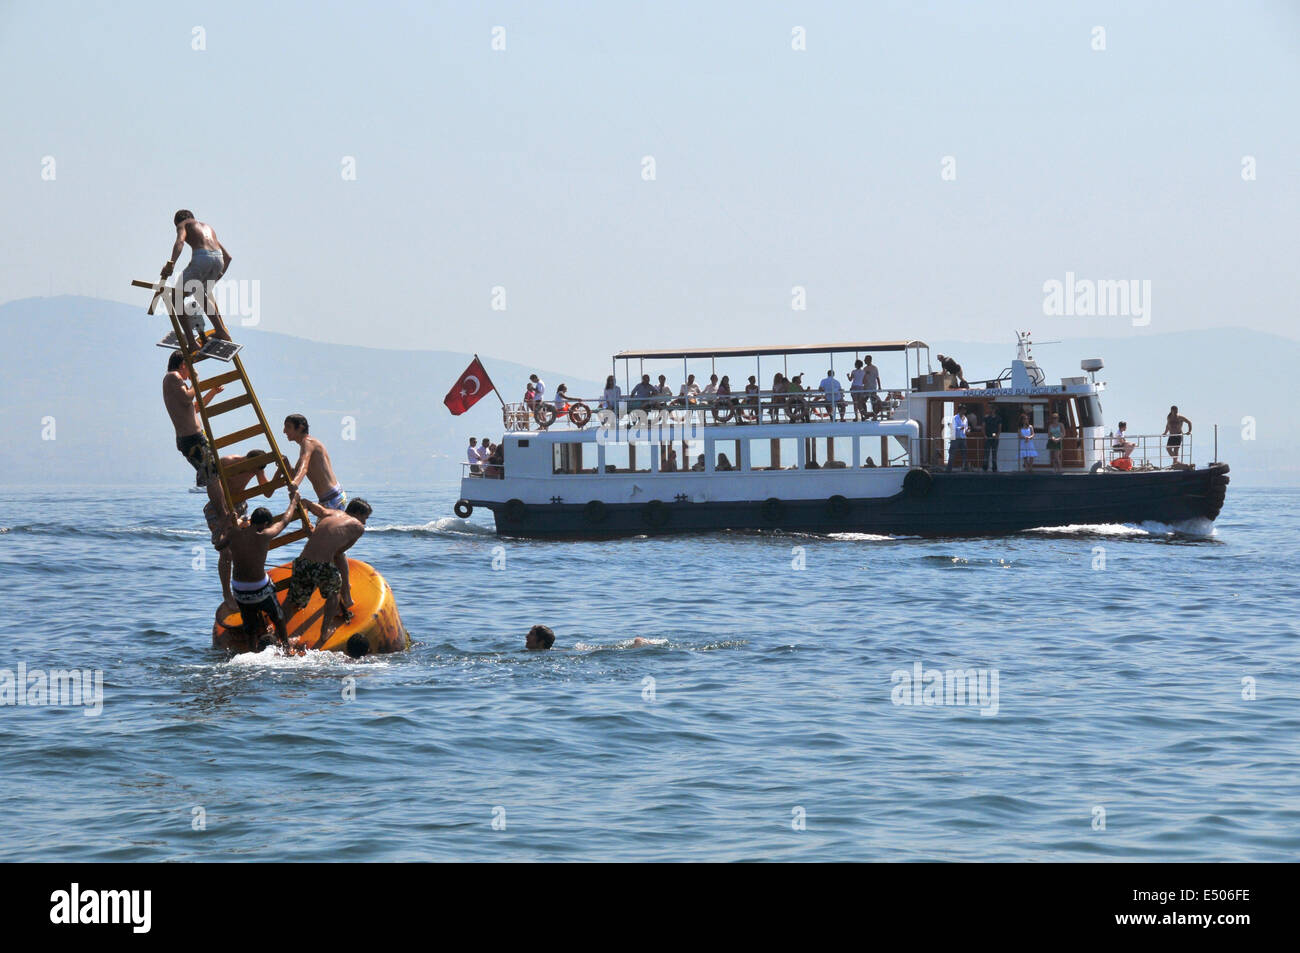 Türkische Jugendliche spielen auf einer Boje off Shore Kinaliada, eine der Prinzeninseln, während eine kleine Fähre tragen Tagesausflügler Stockfoto